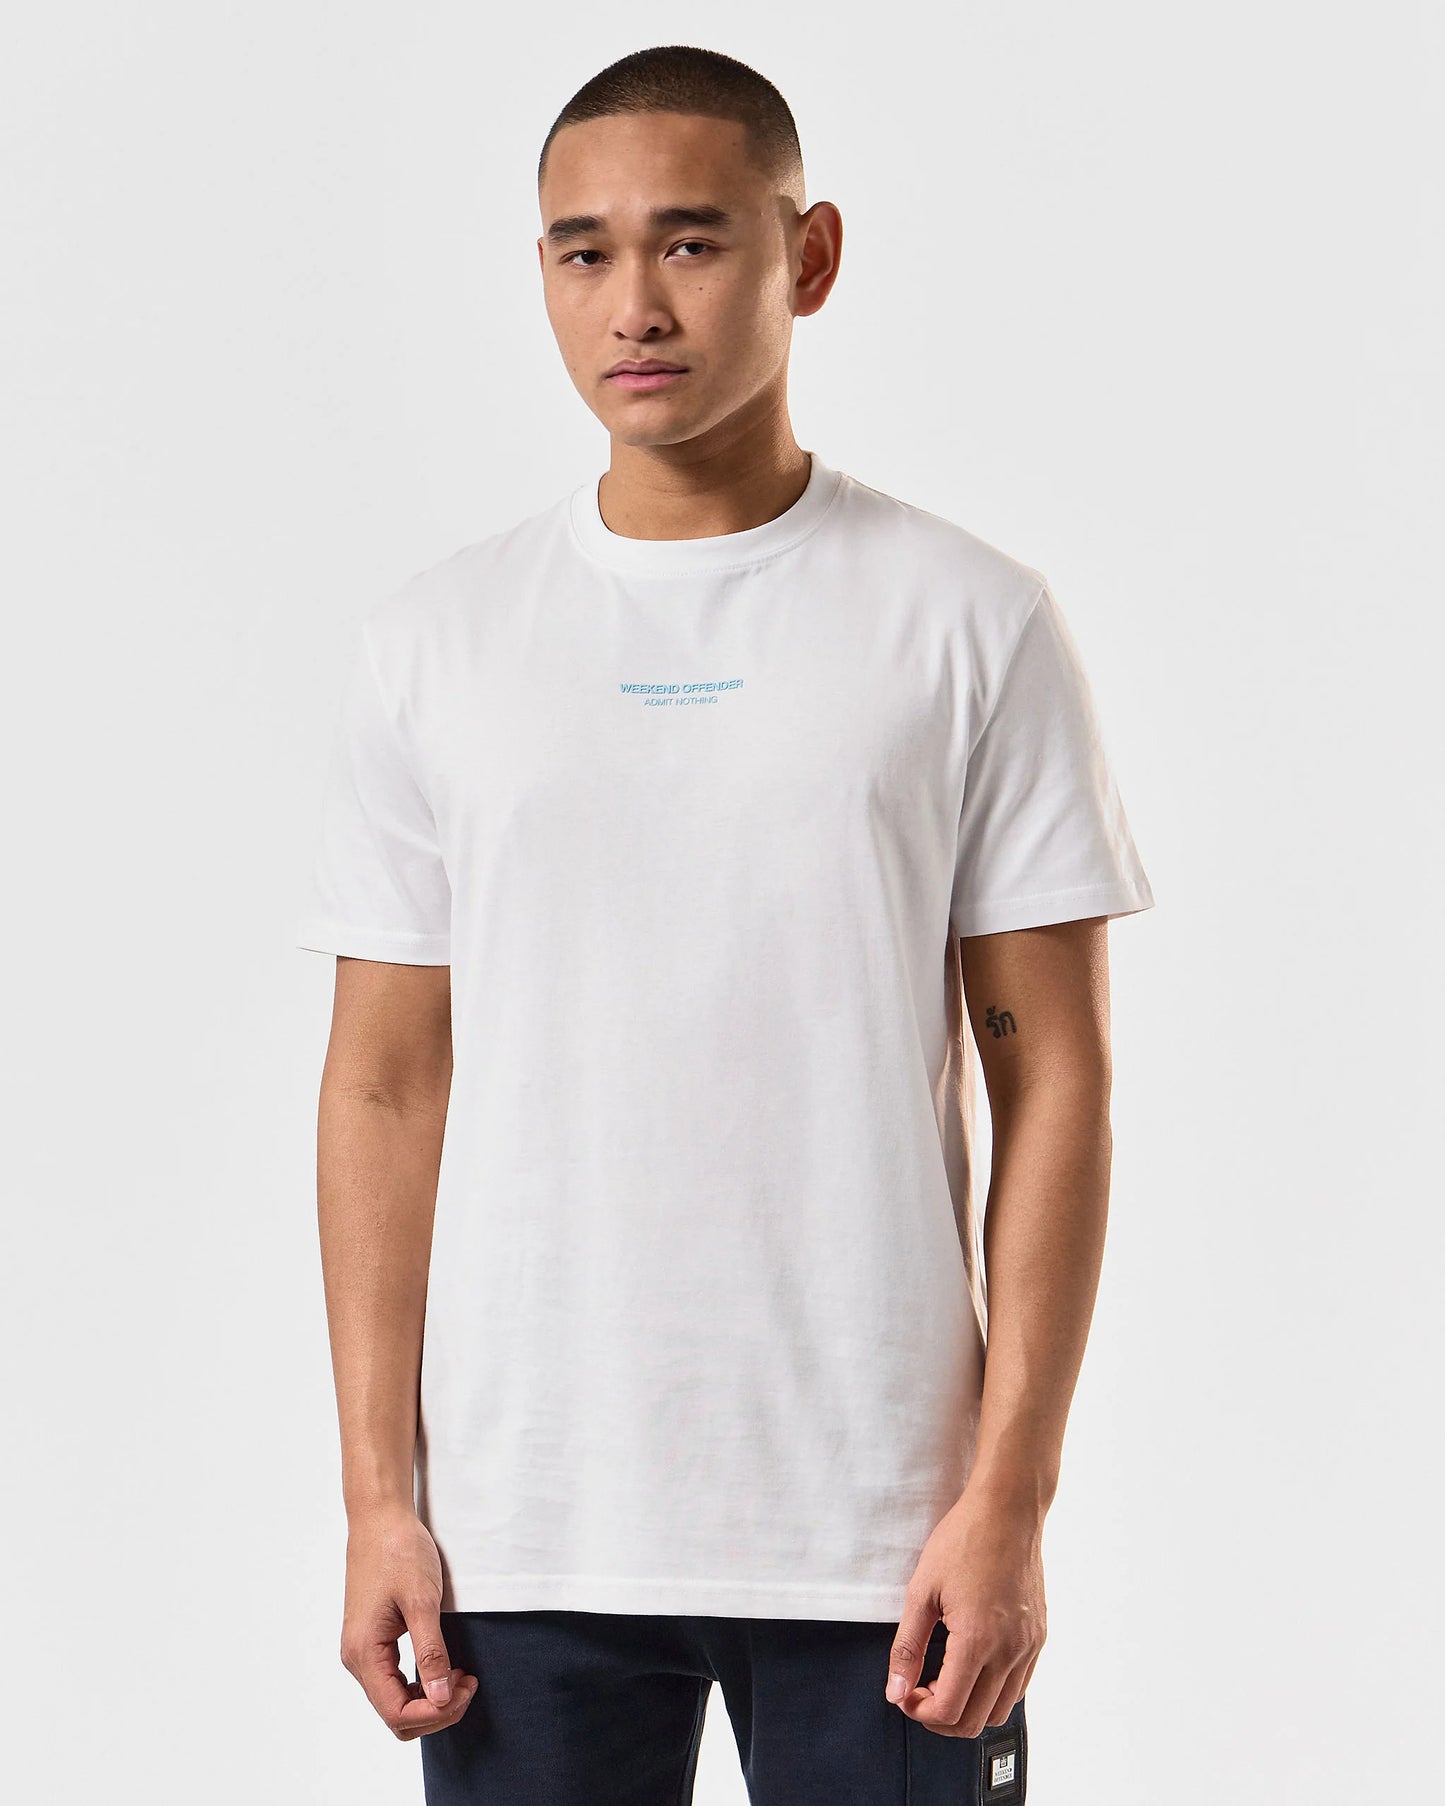 Weekend Offender - Millergrove T-Shirt White / Saltwater Blue